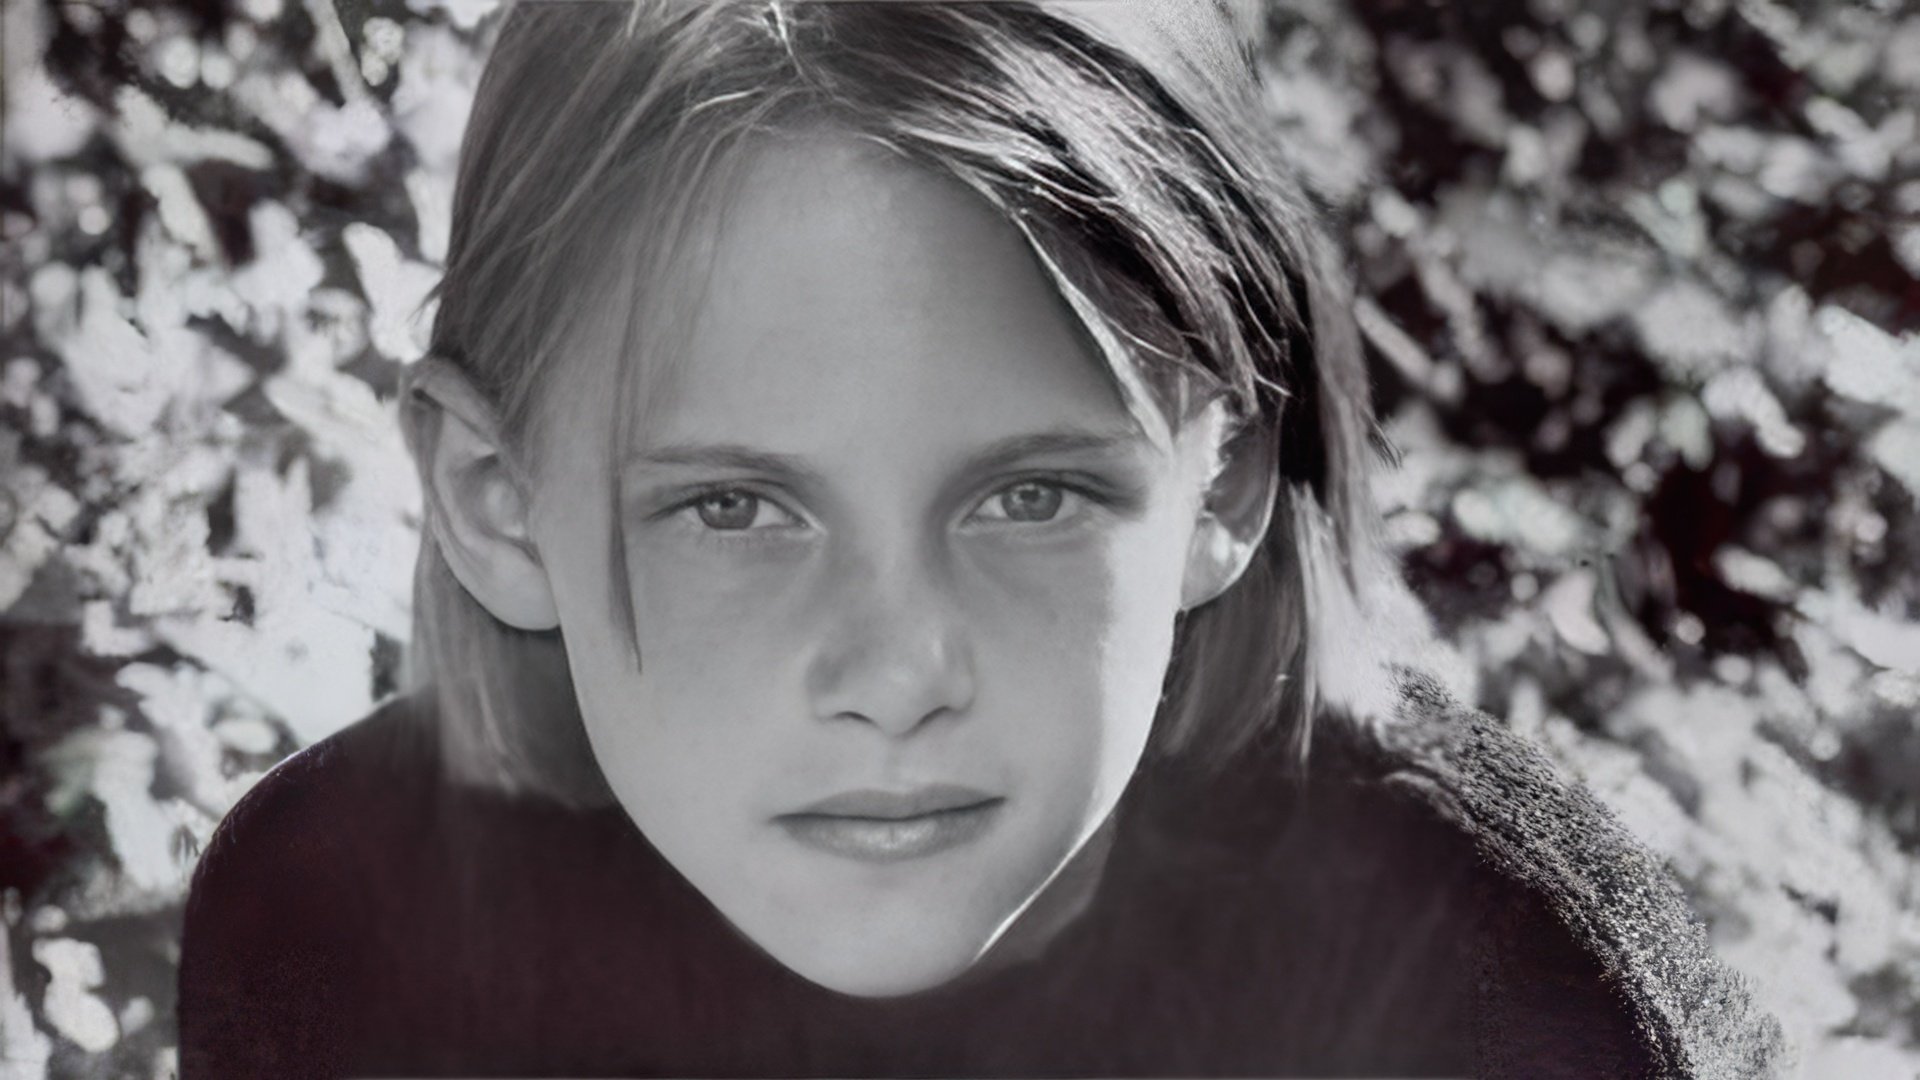 Kristen Stewart’s photo as a child